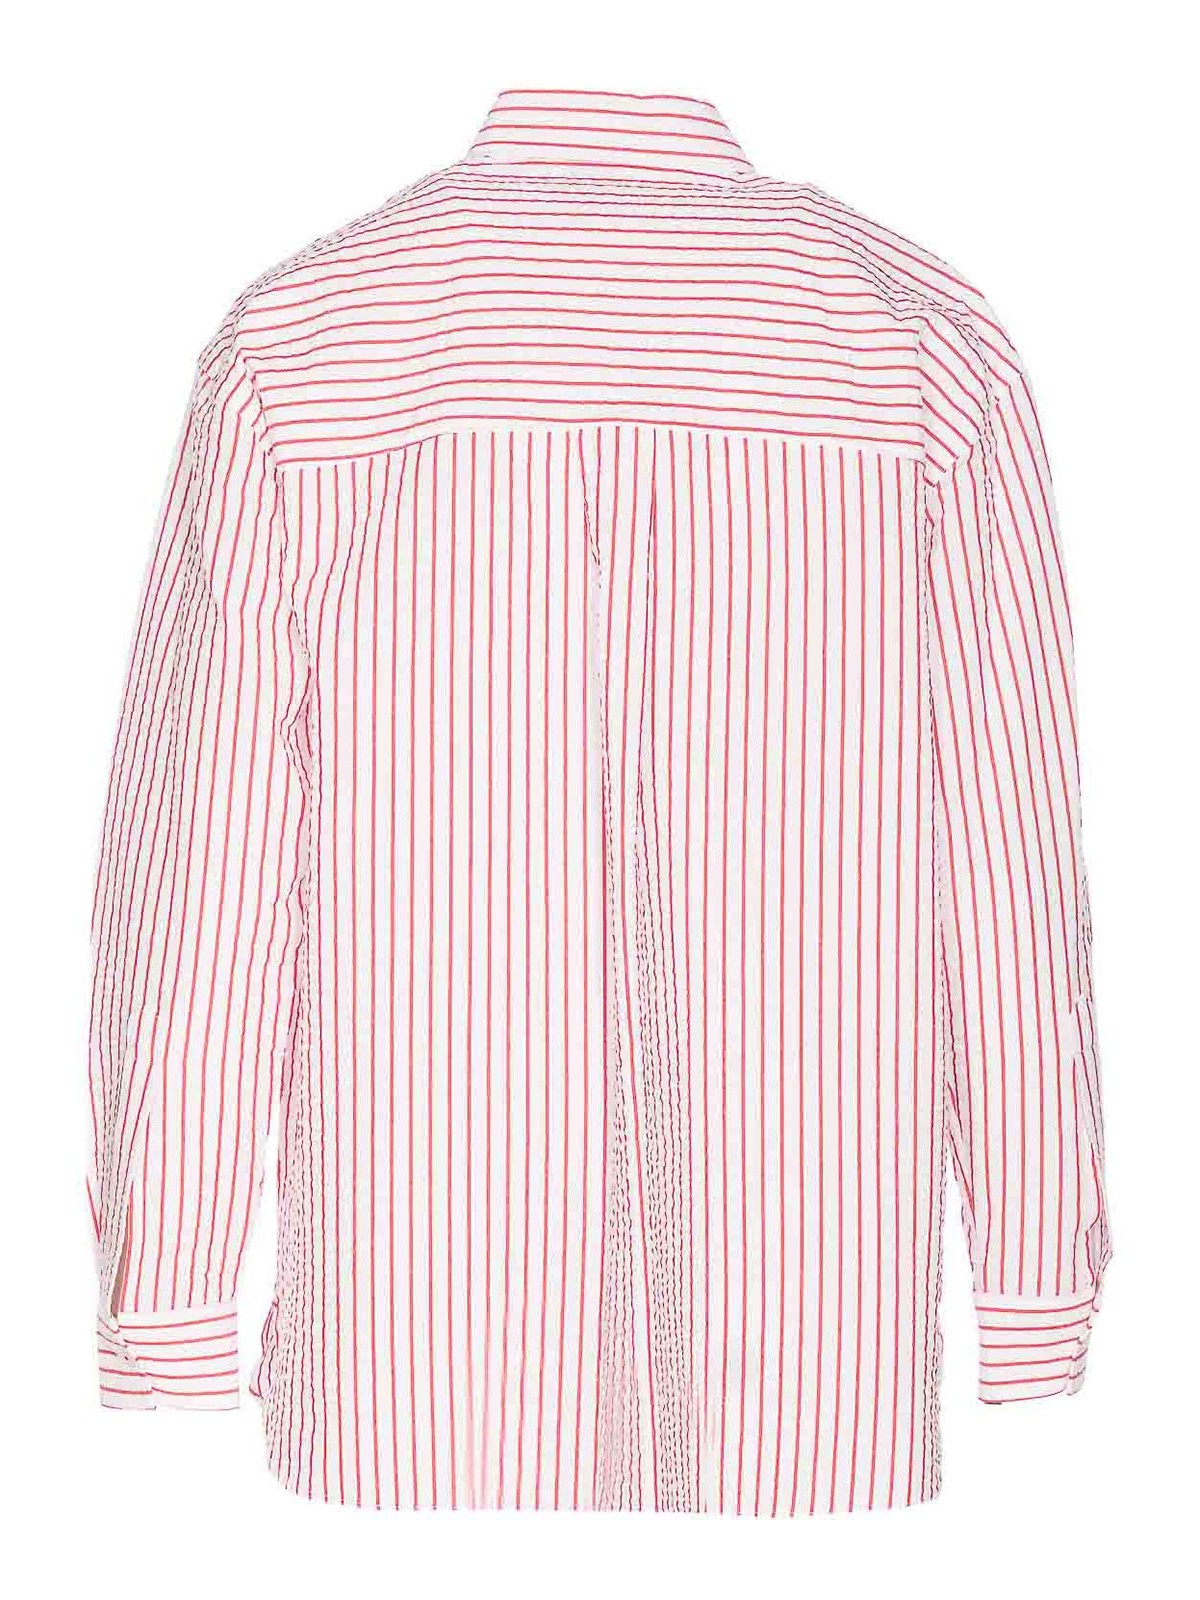 Shop Pinko Seersucker Striped Shirt In Red